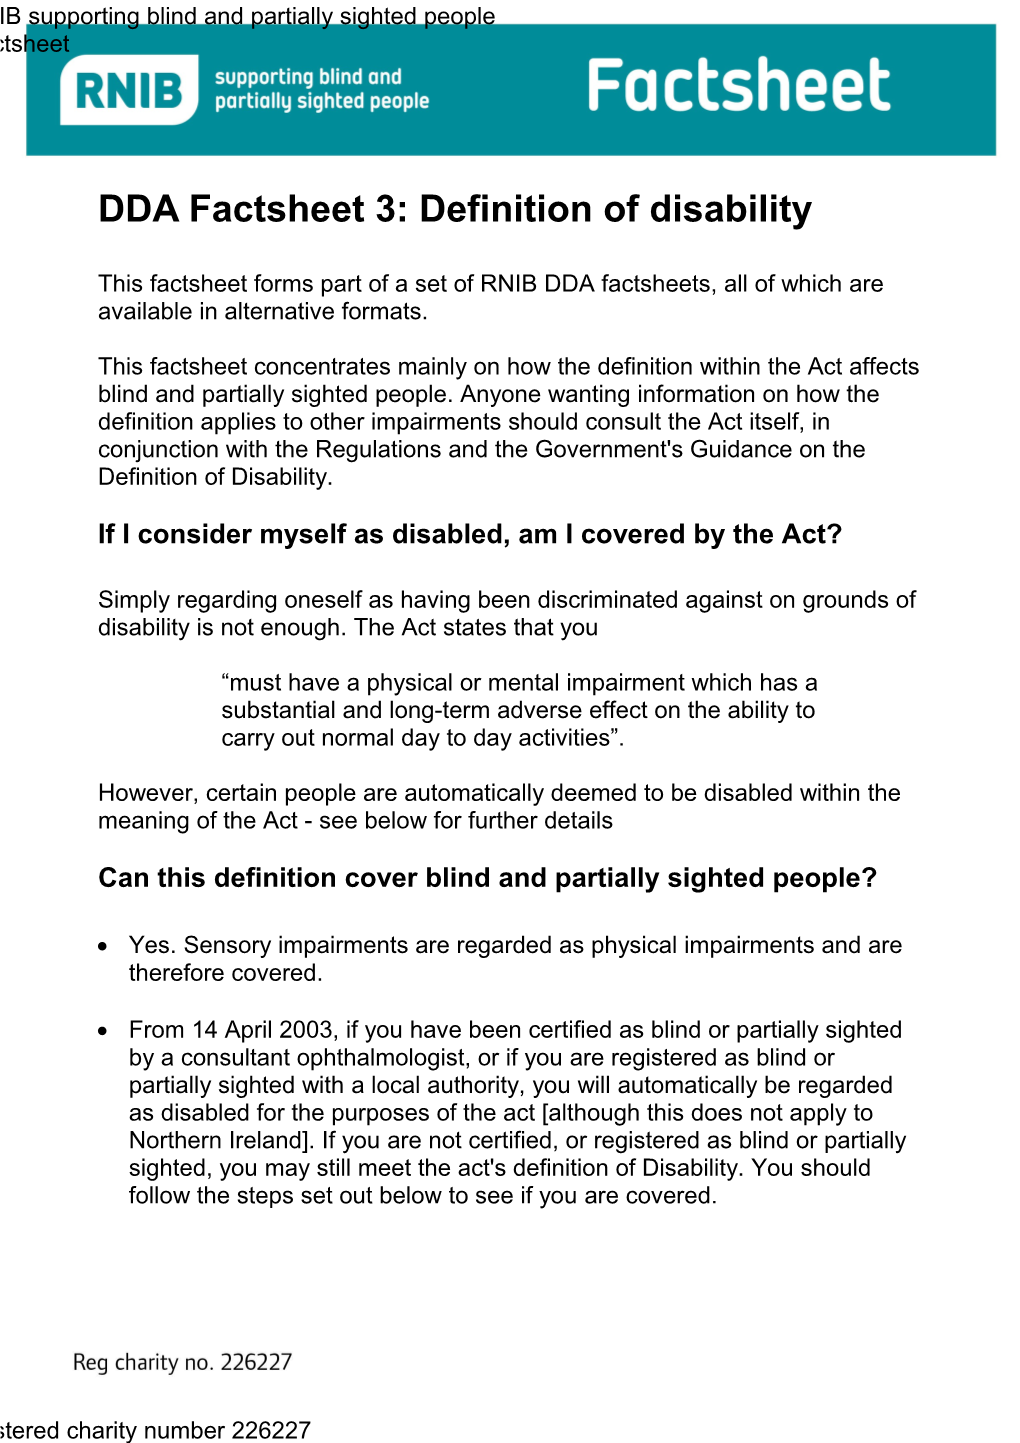 DDA Factsheet 3: Definition of Disability